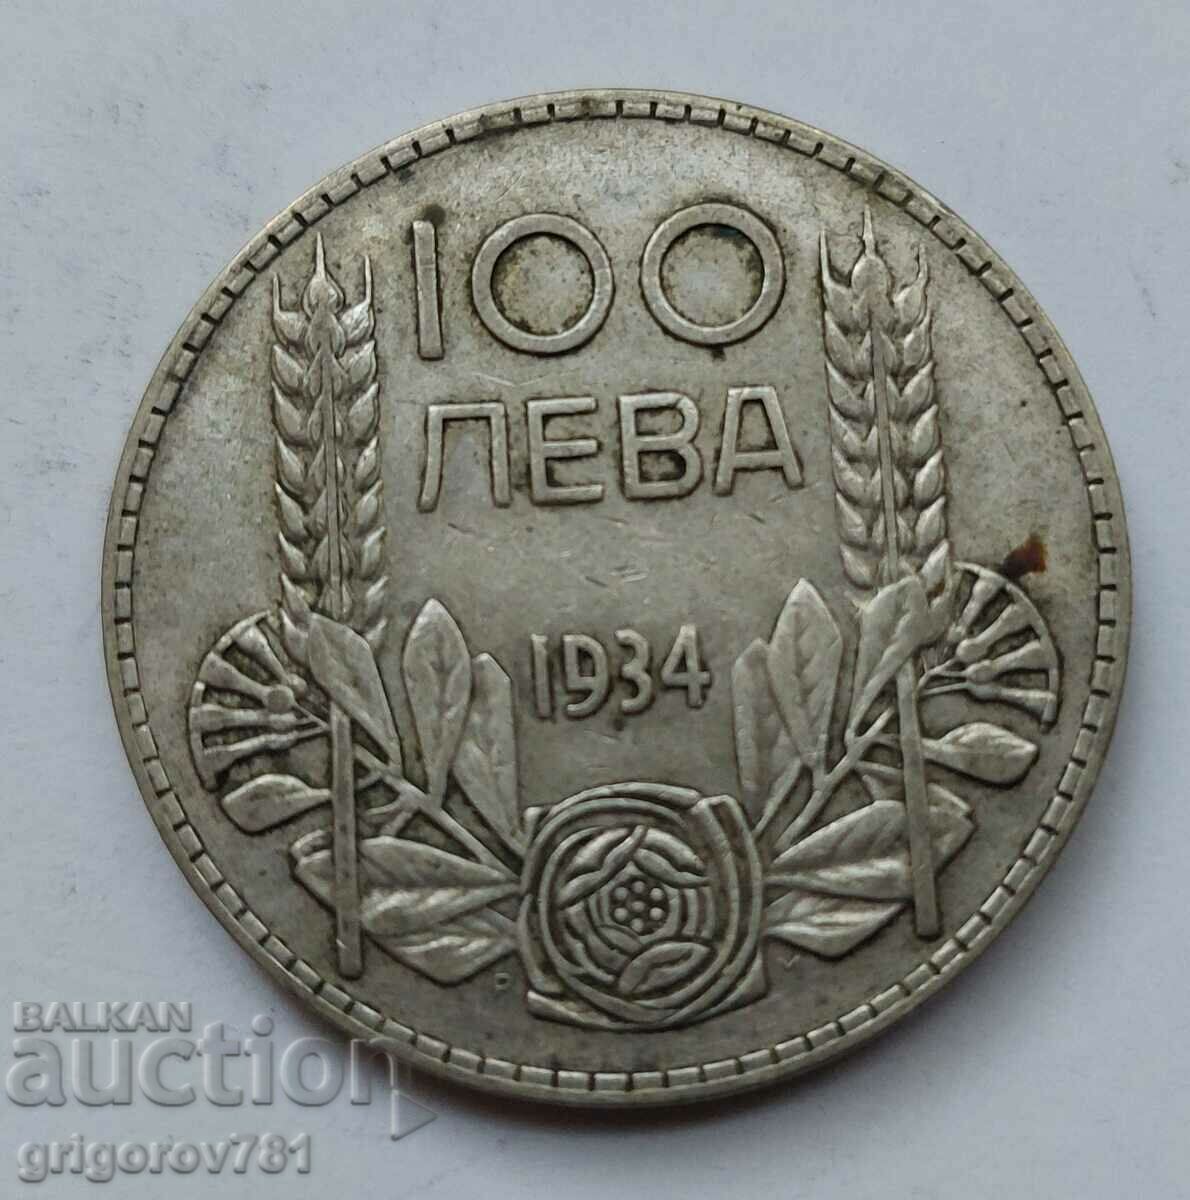 Ασήμι 100 λέβα Βουλγαρία 1934 - ασημένιο νόμισμα #69